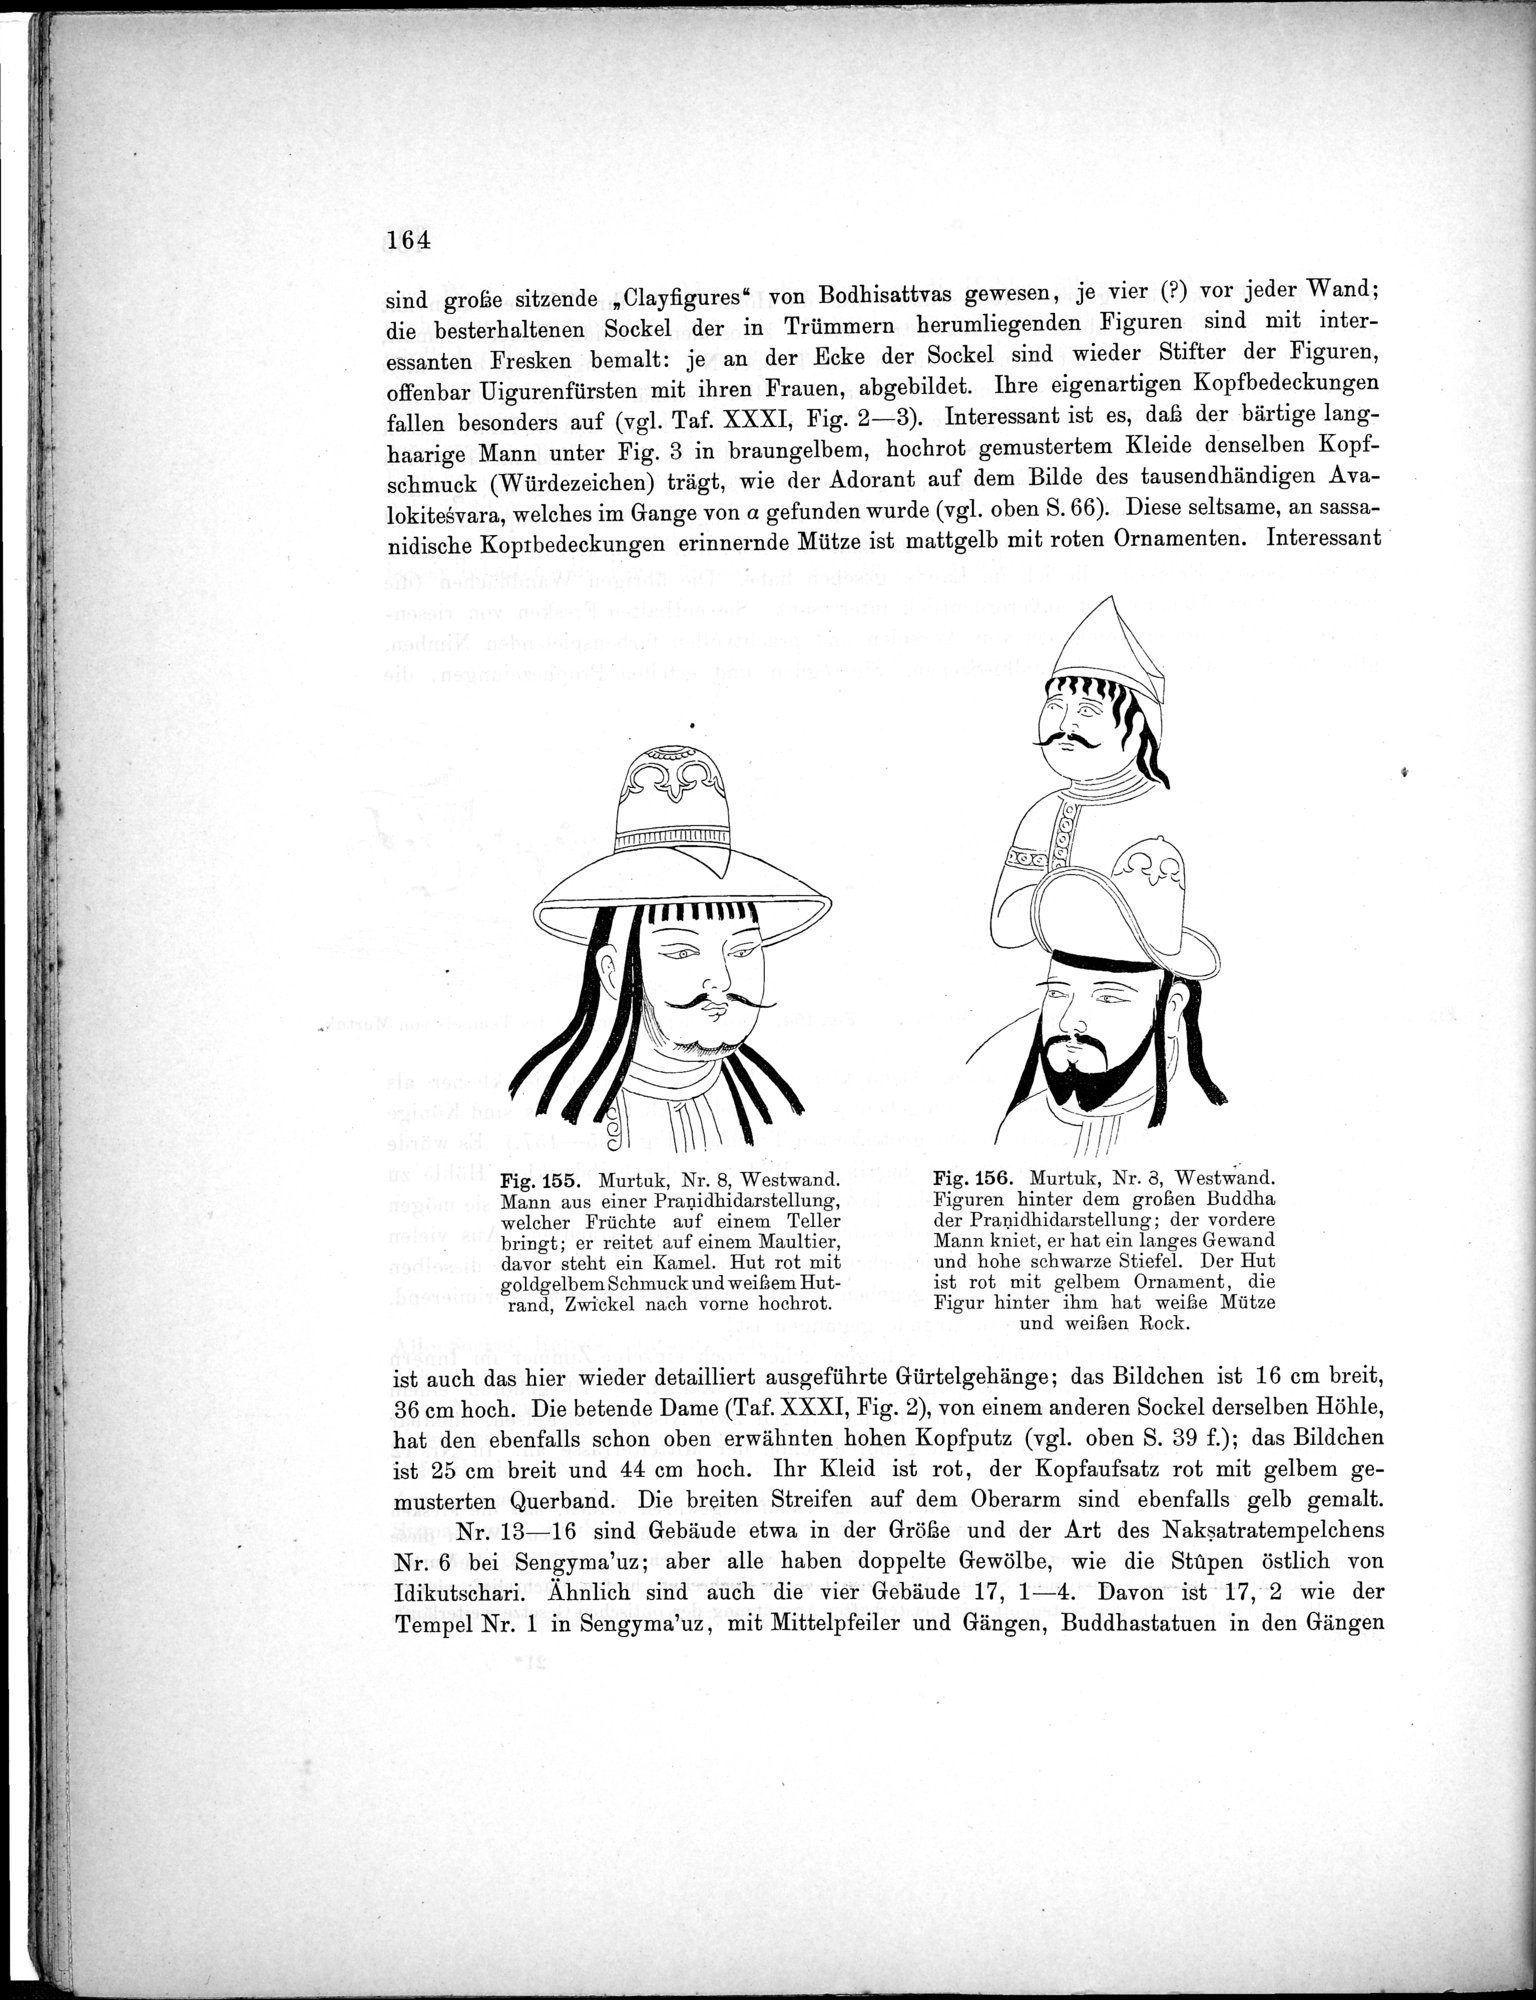 Bericht über archäologische Arbeiten in Idikutschari und Umgebung im Winter 1902-1903 : vol.1 / Page 174 (Grayscale High Resolution Image)